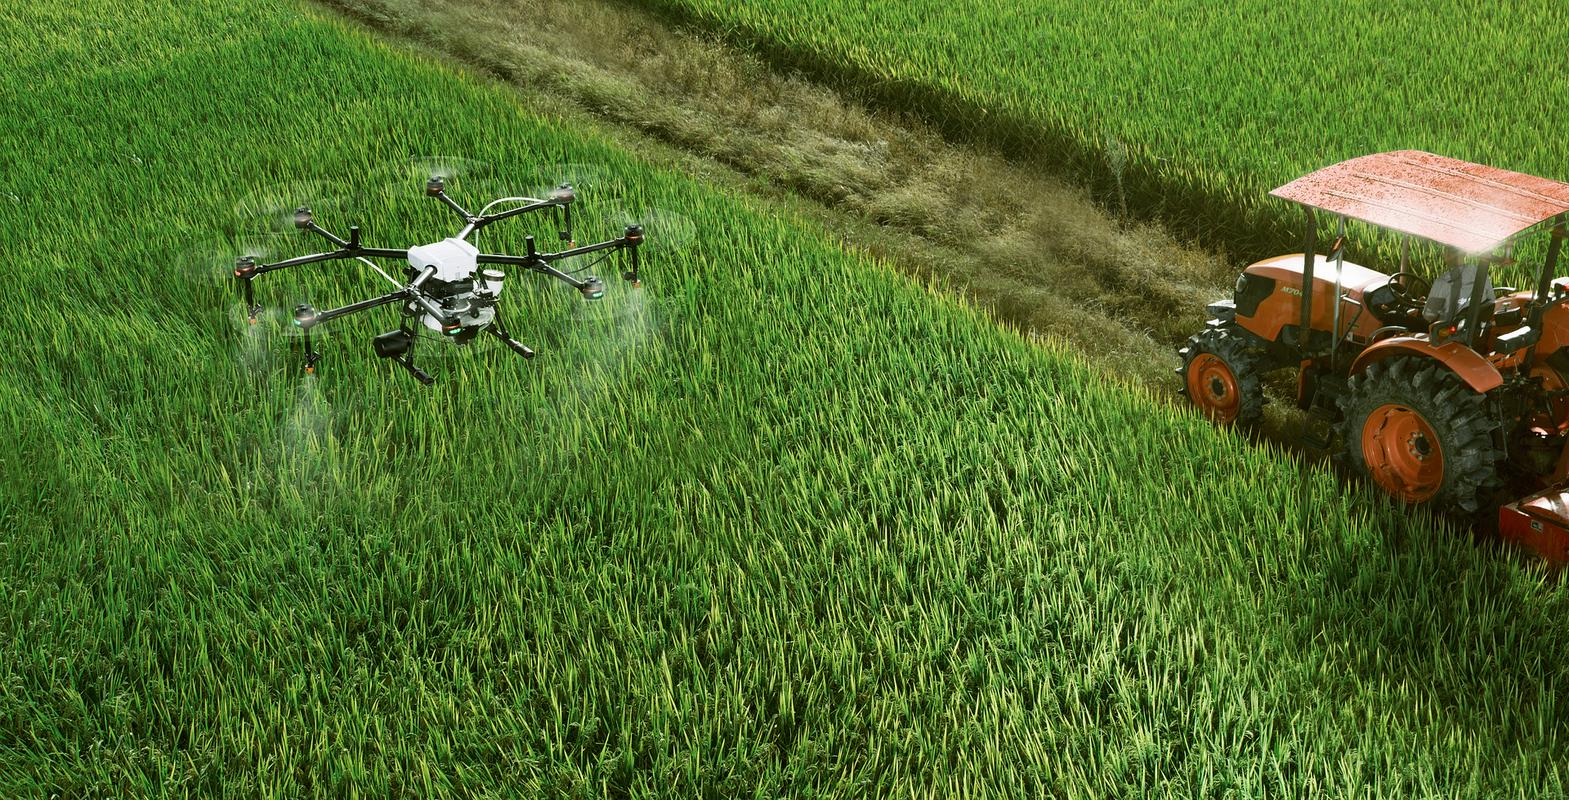 Umetna inteligenca igra vse večjo vlogo na področju kmetijstva. Podjetje Carbon Robotics je konec marca predstavilo traktorju podoben stroj, ki z umetno inteligenco prepoznavana in lasersko uničuje plevel na njivah. Foto: Pixabay